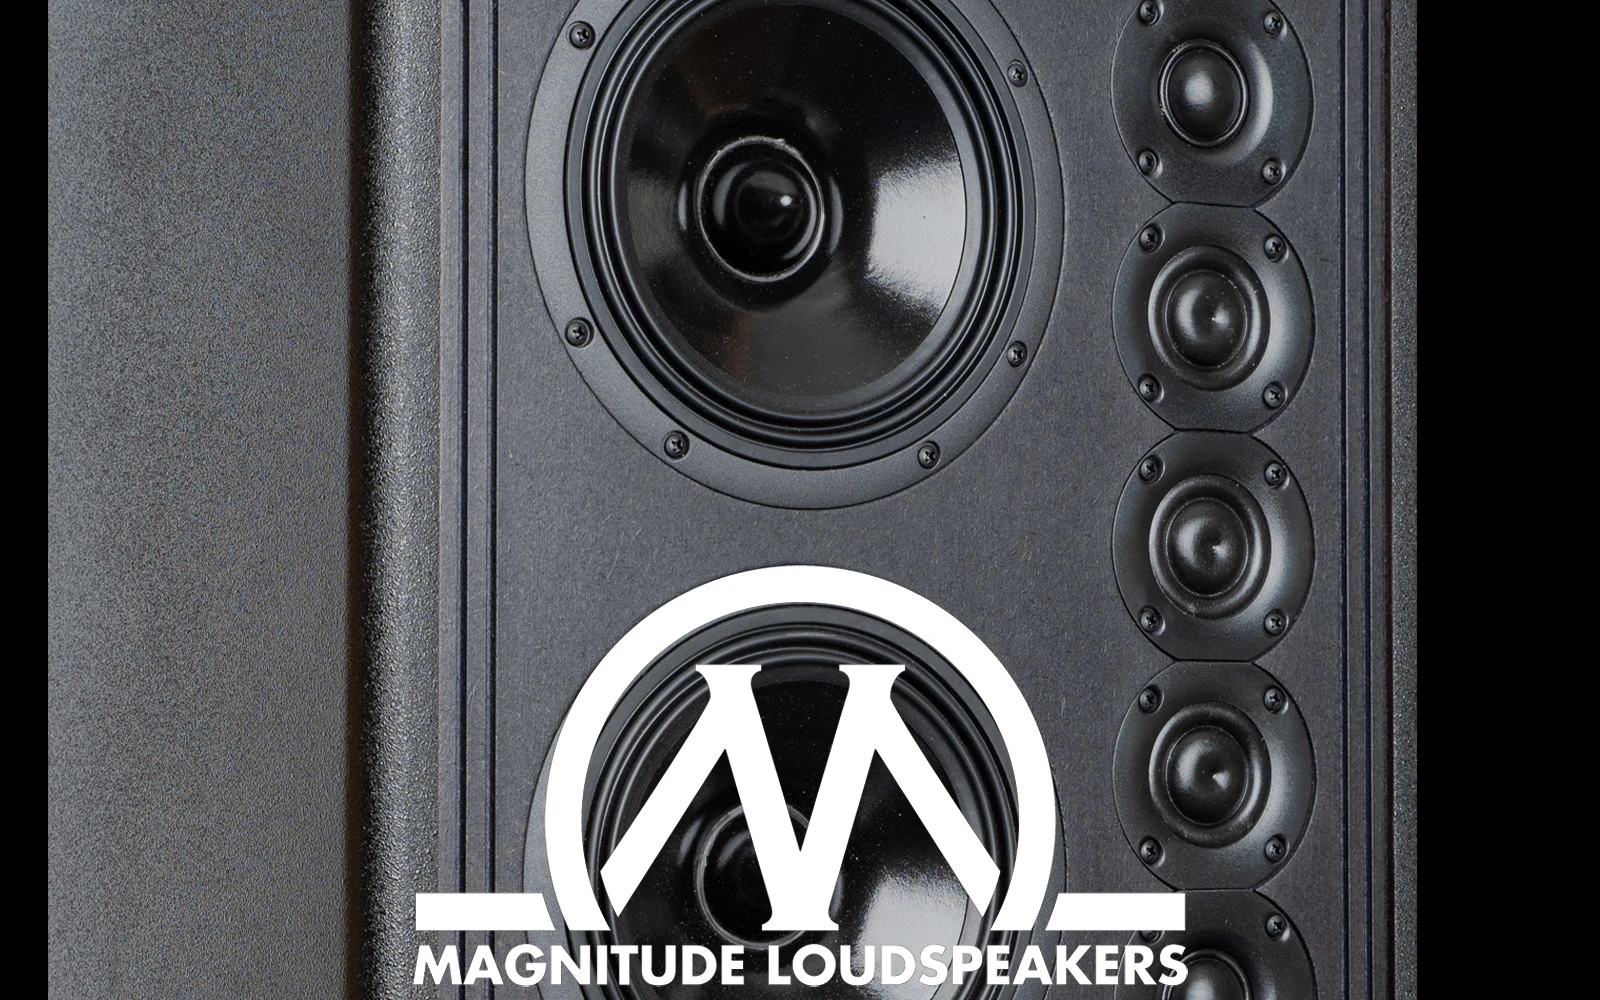 CSN Teknik har reference højtalere i showroomet fra Magnitude Loudspeakers